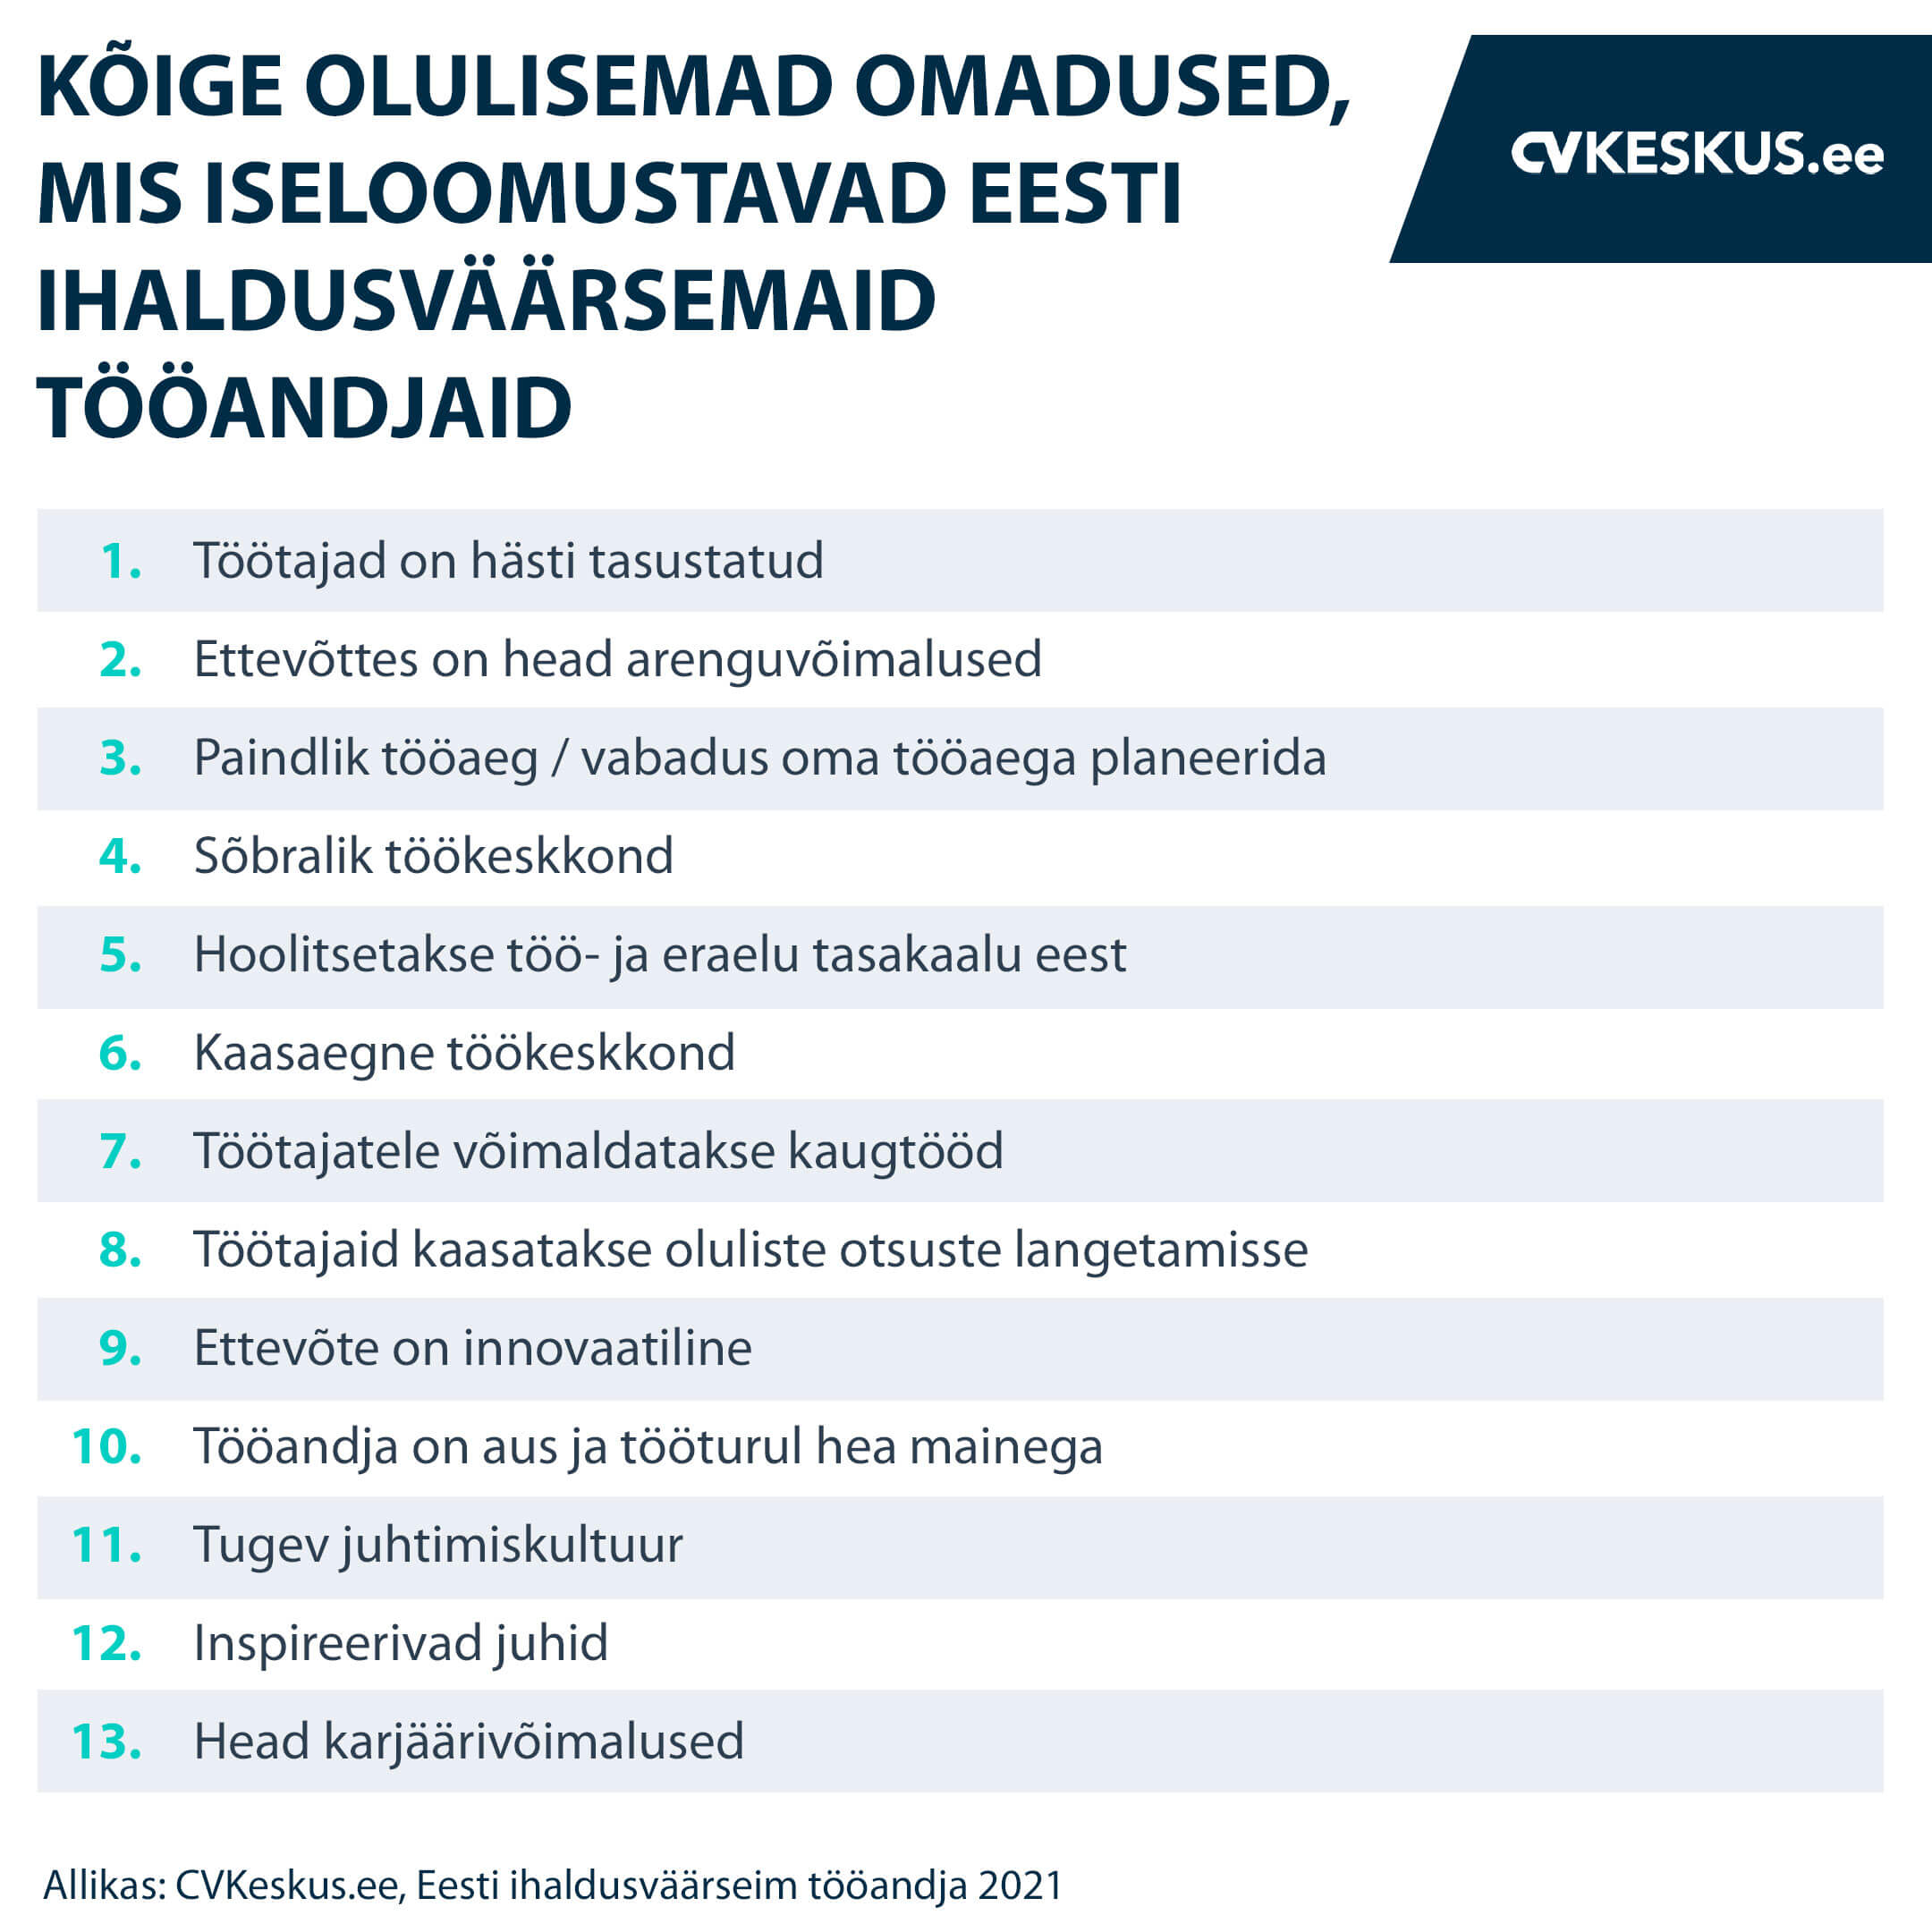 Kõige olulisemad omadused, mis iseloomustavad Eesti ihaldusväärsemaid tööandjaid.